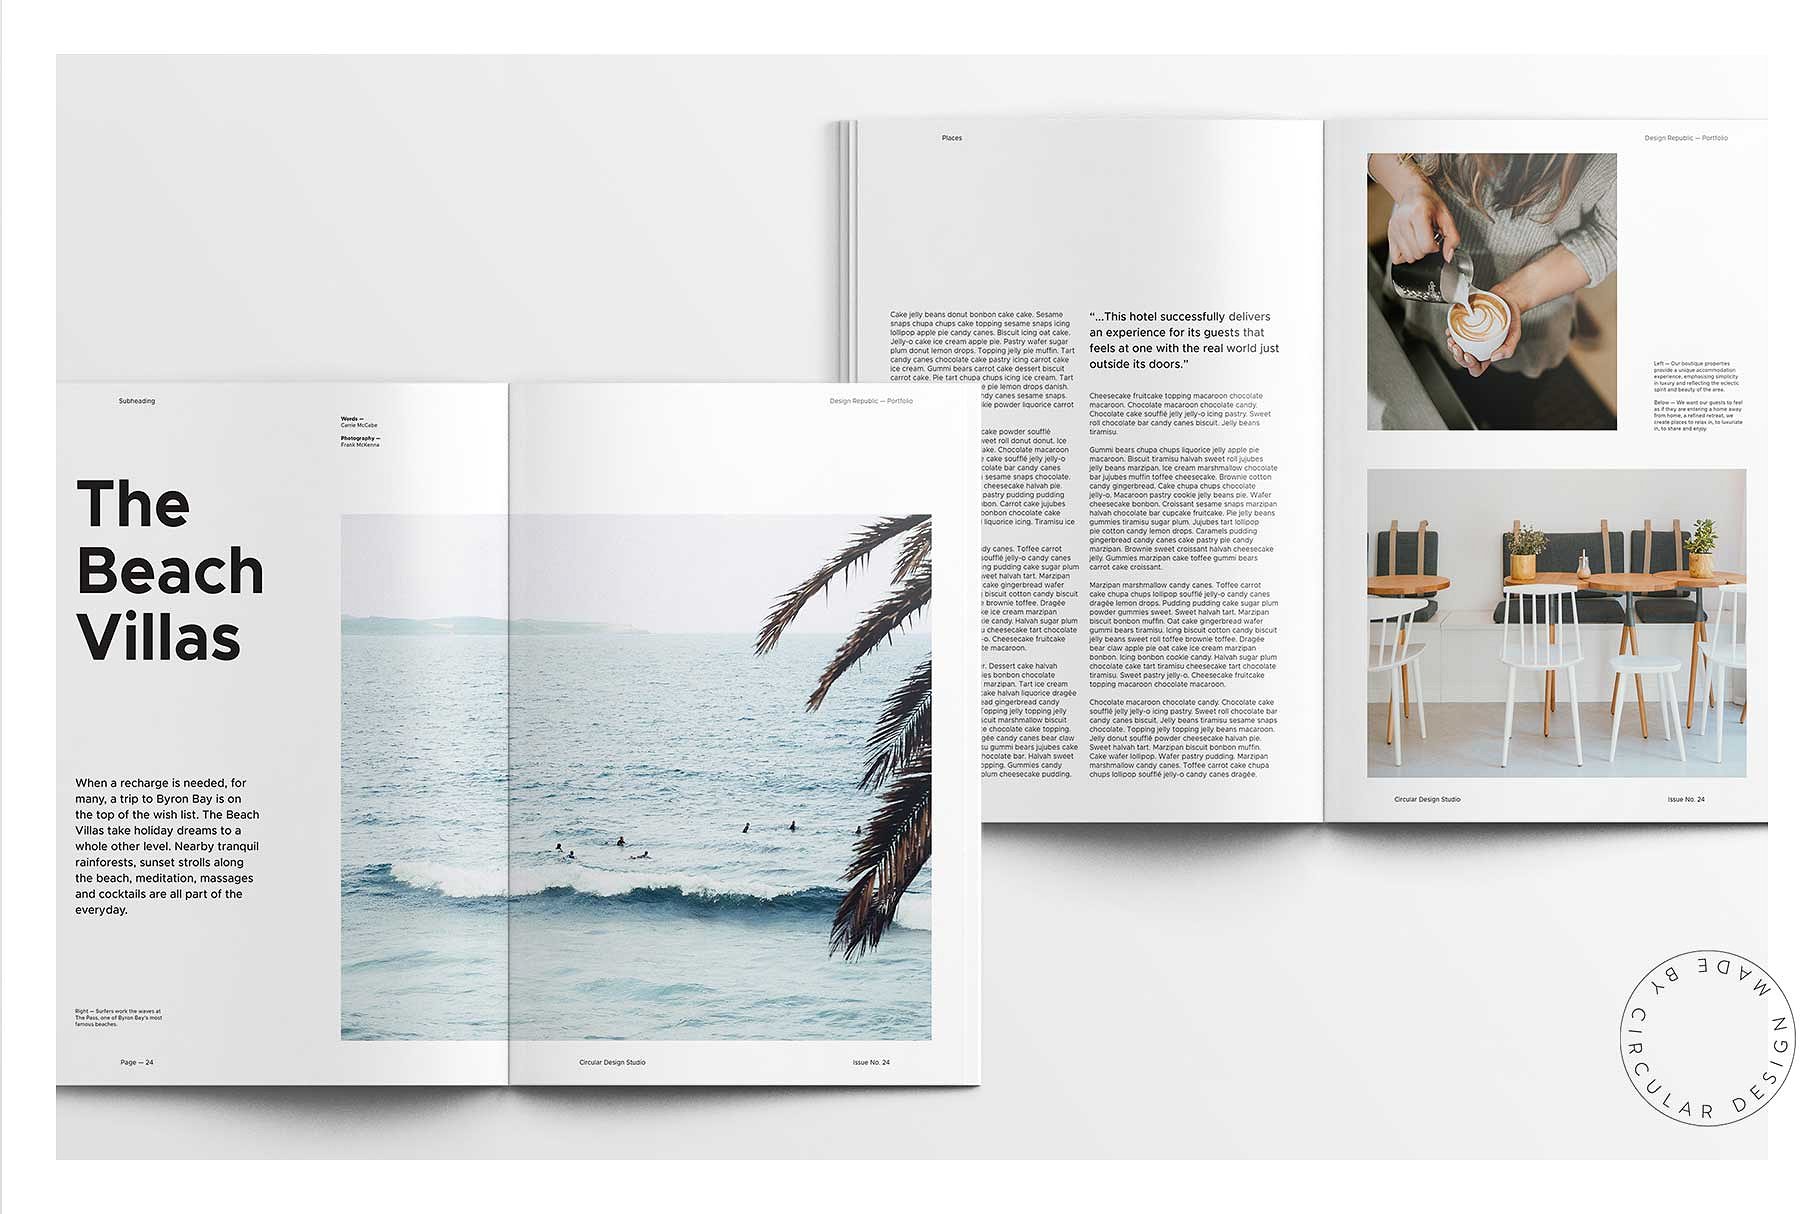 素材库下午茶：时尚简约风格的画册手册宣传册楼书InDesign设计模板插图(6)